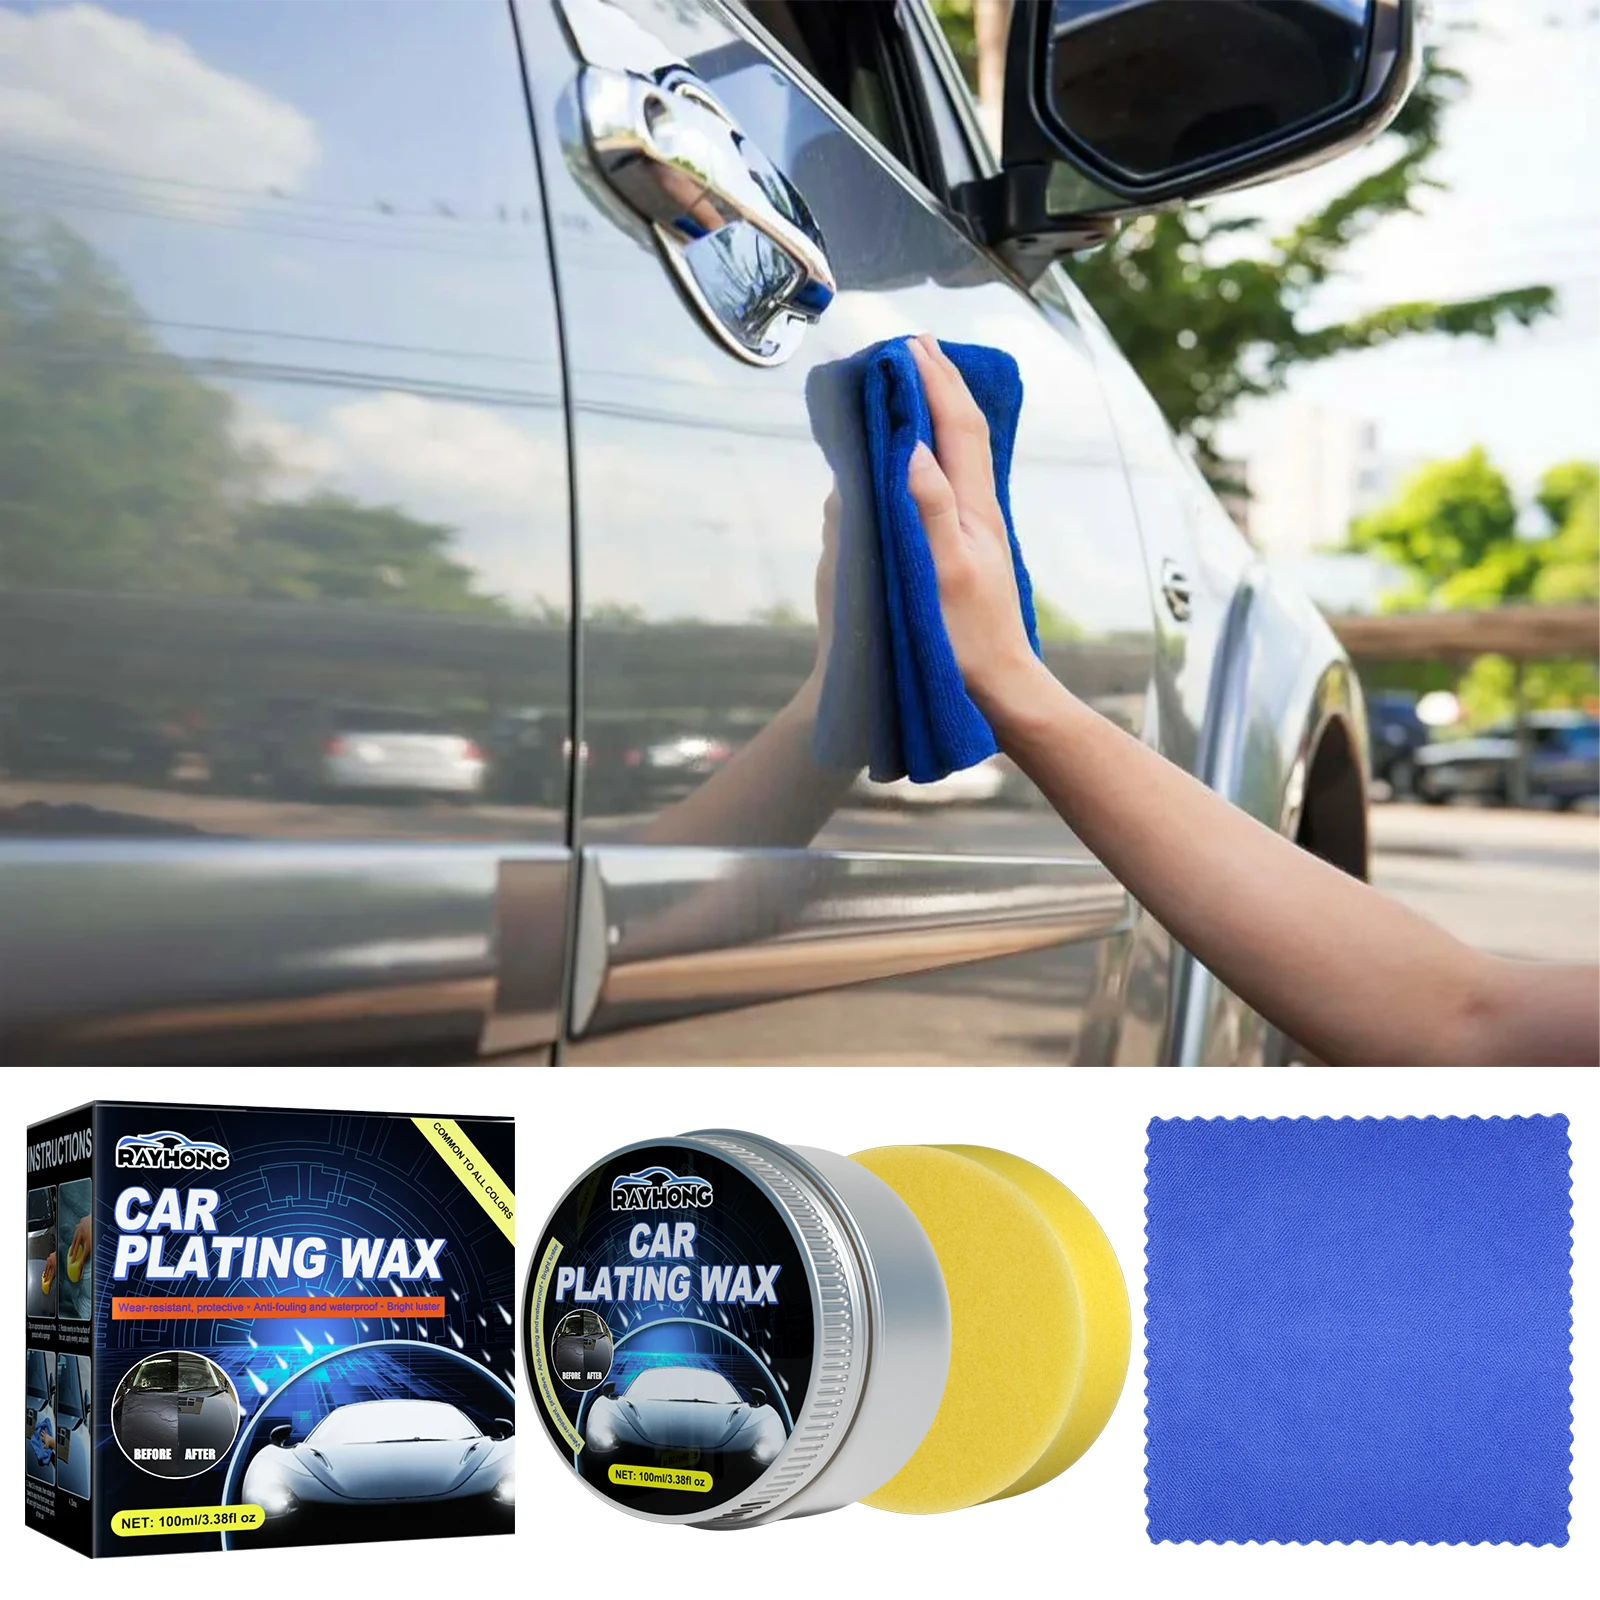 Rayhong Crystal Wax Wear-resistant Car Crystal Wax Coating Protective ...